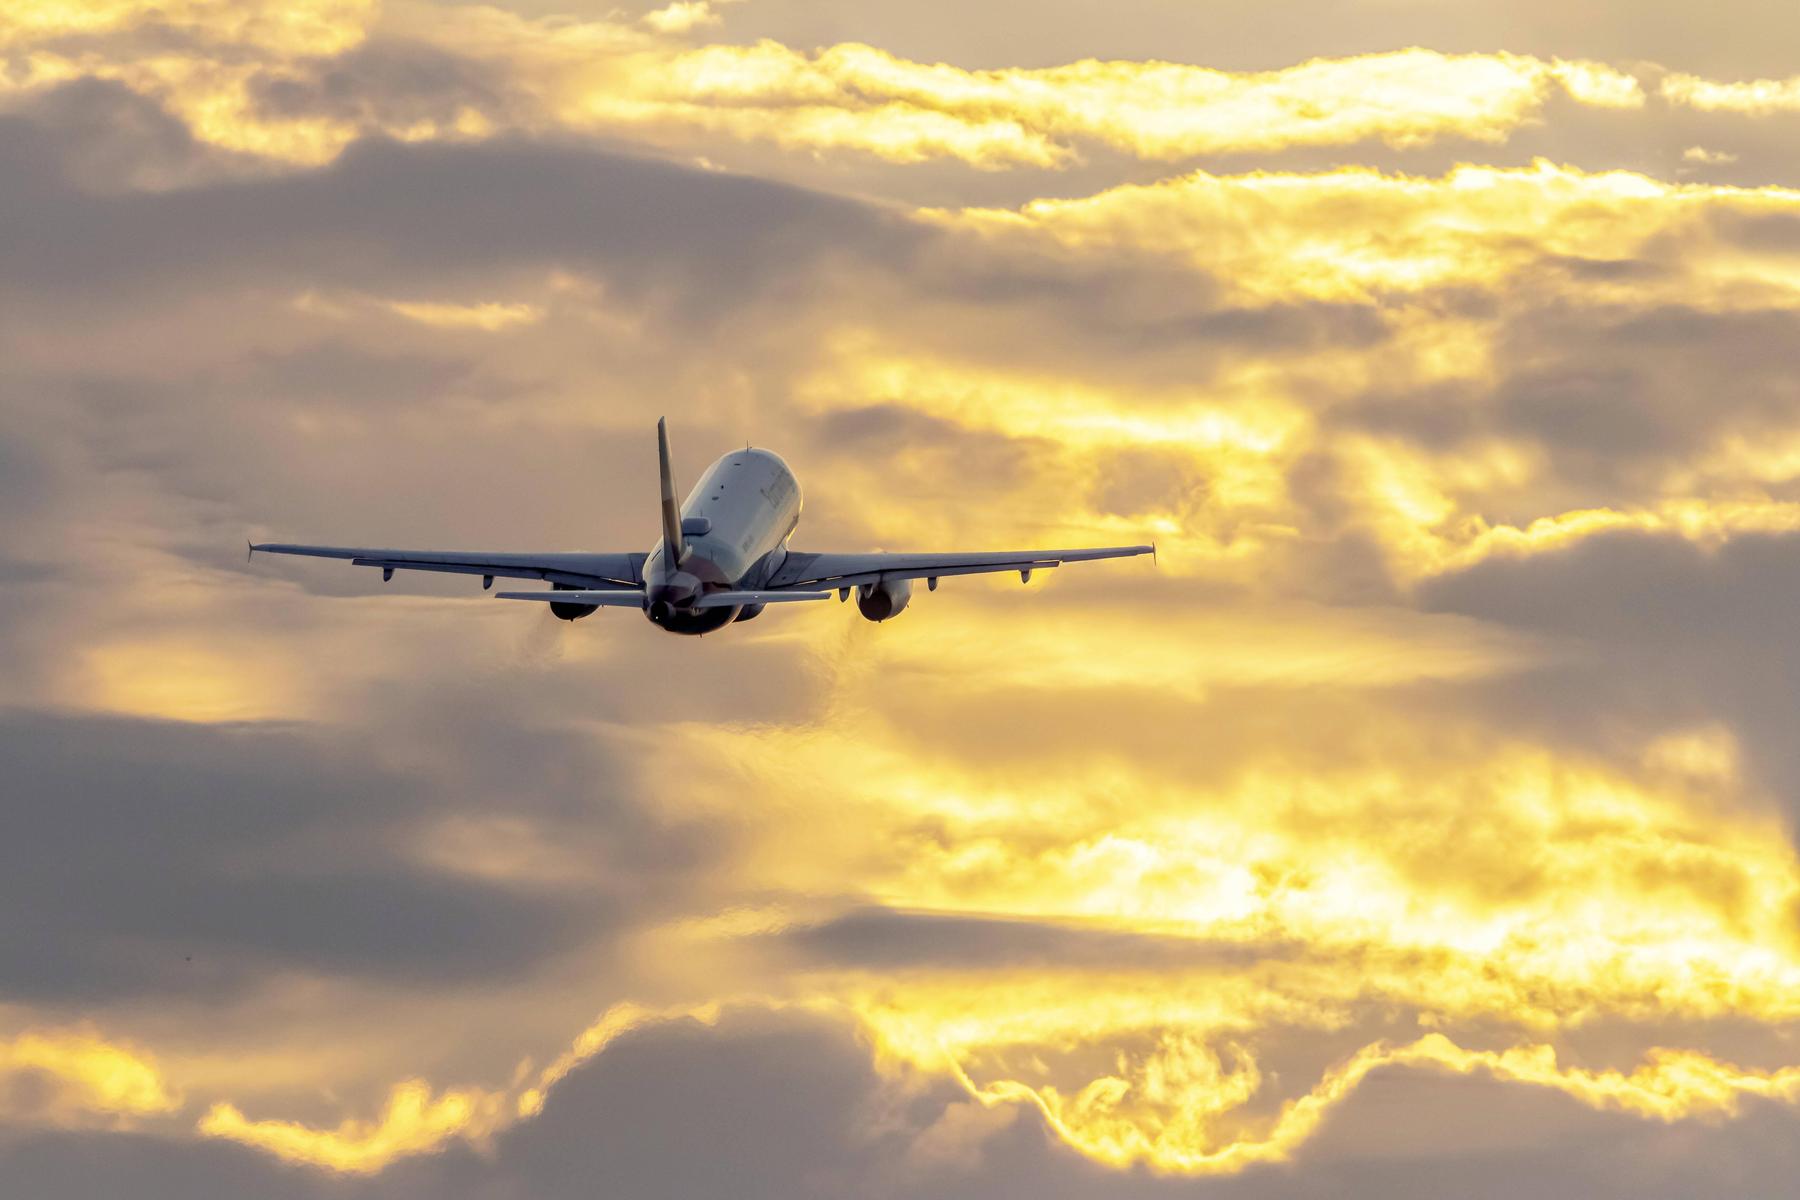 32.000 Schadensmeldungen, aber tausende Flugzeugmechaniker fehlen